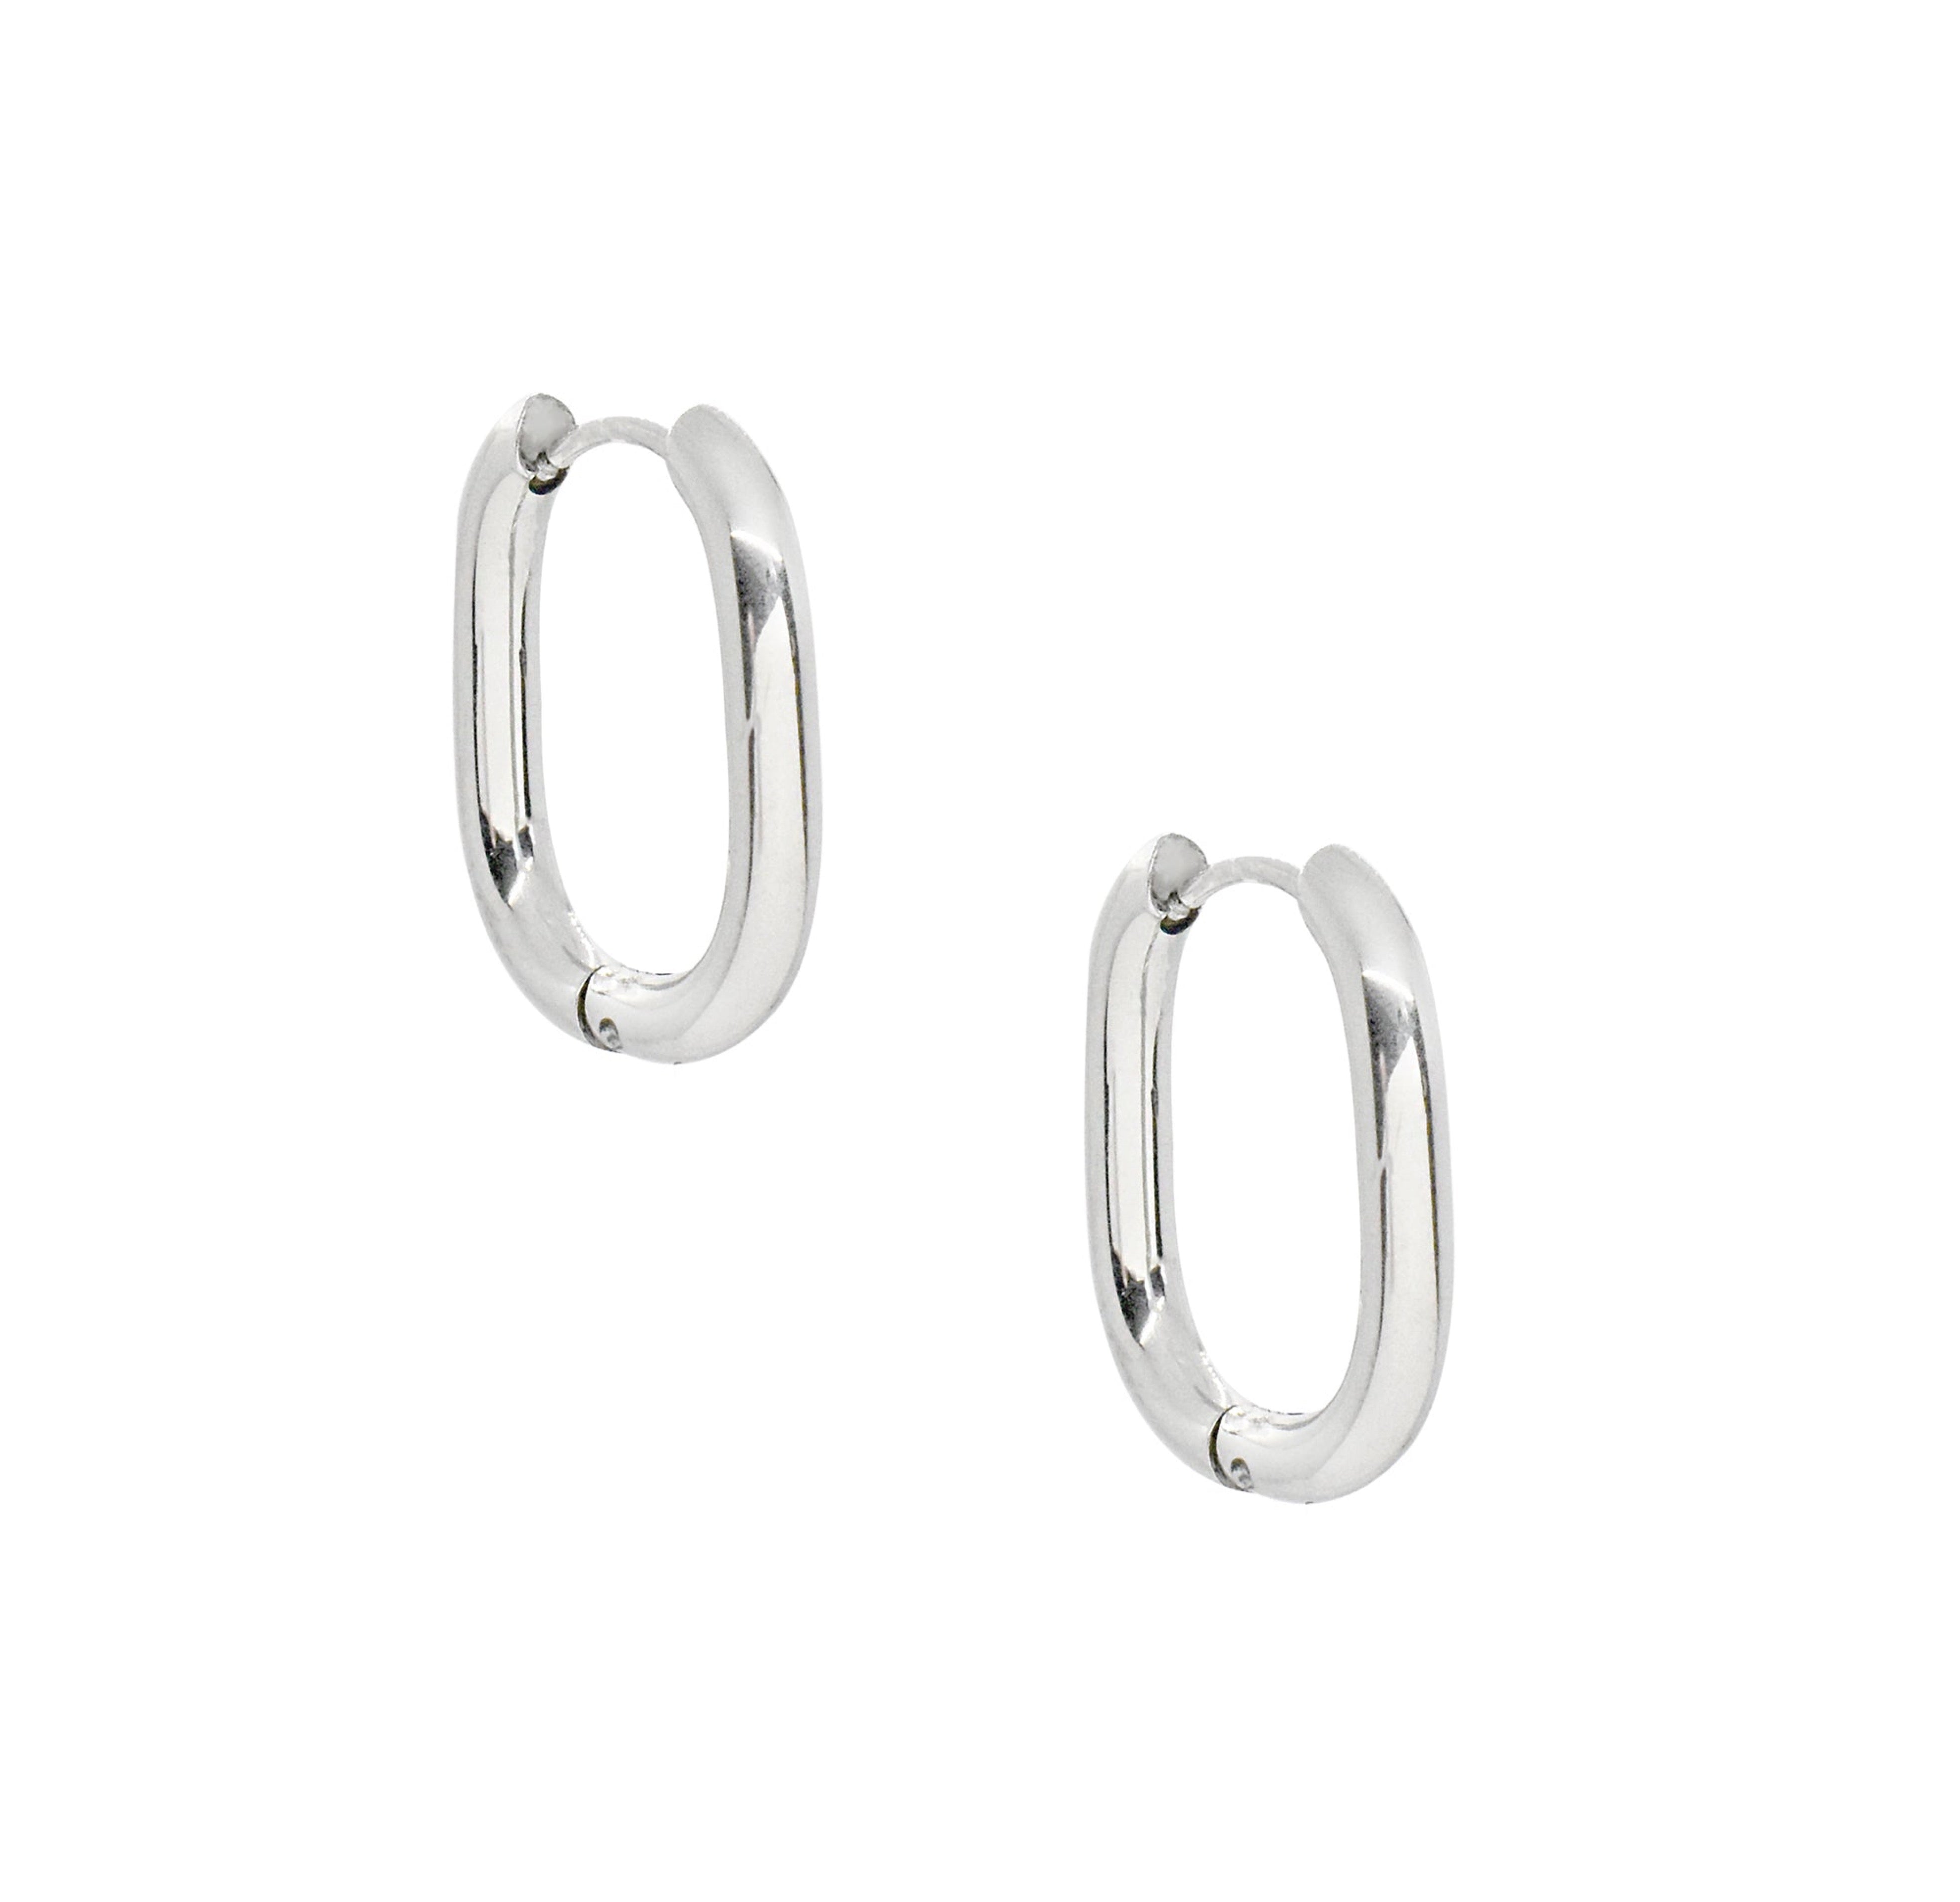 silver oval thin hoops waterproof jewelry